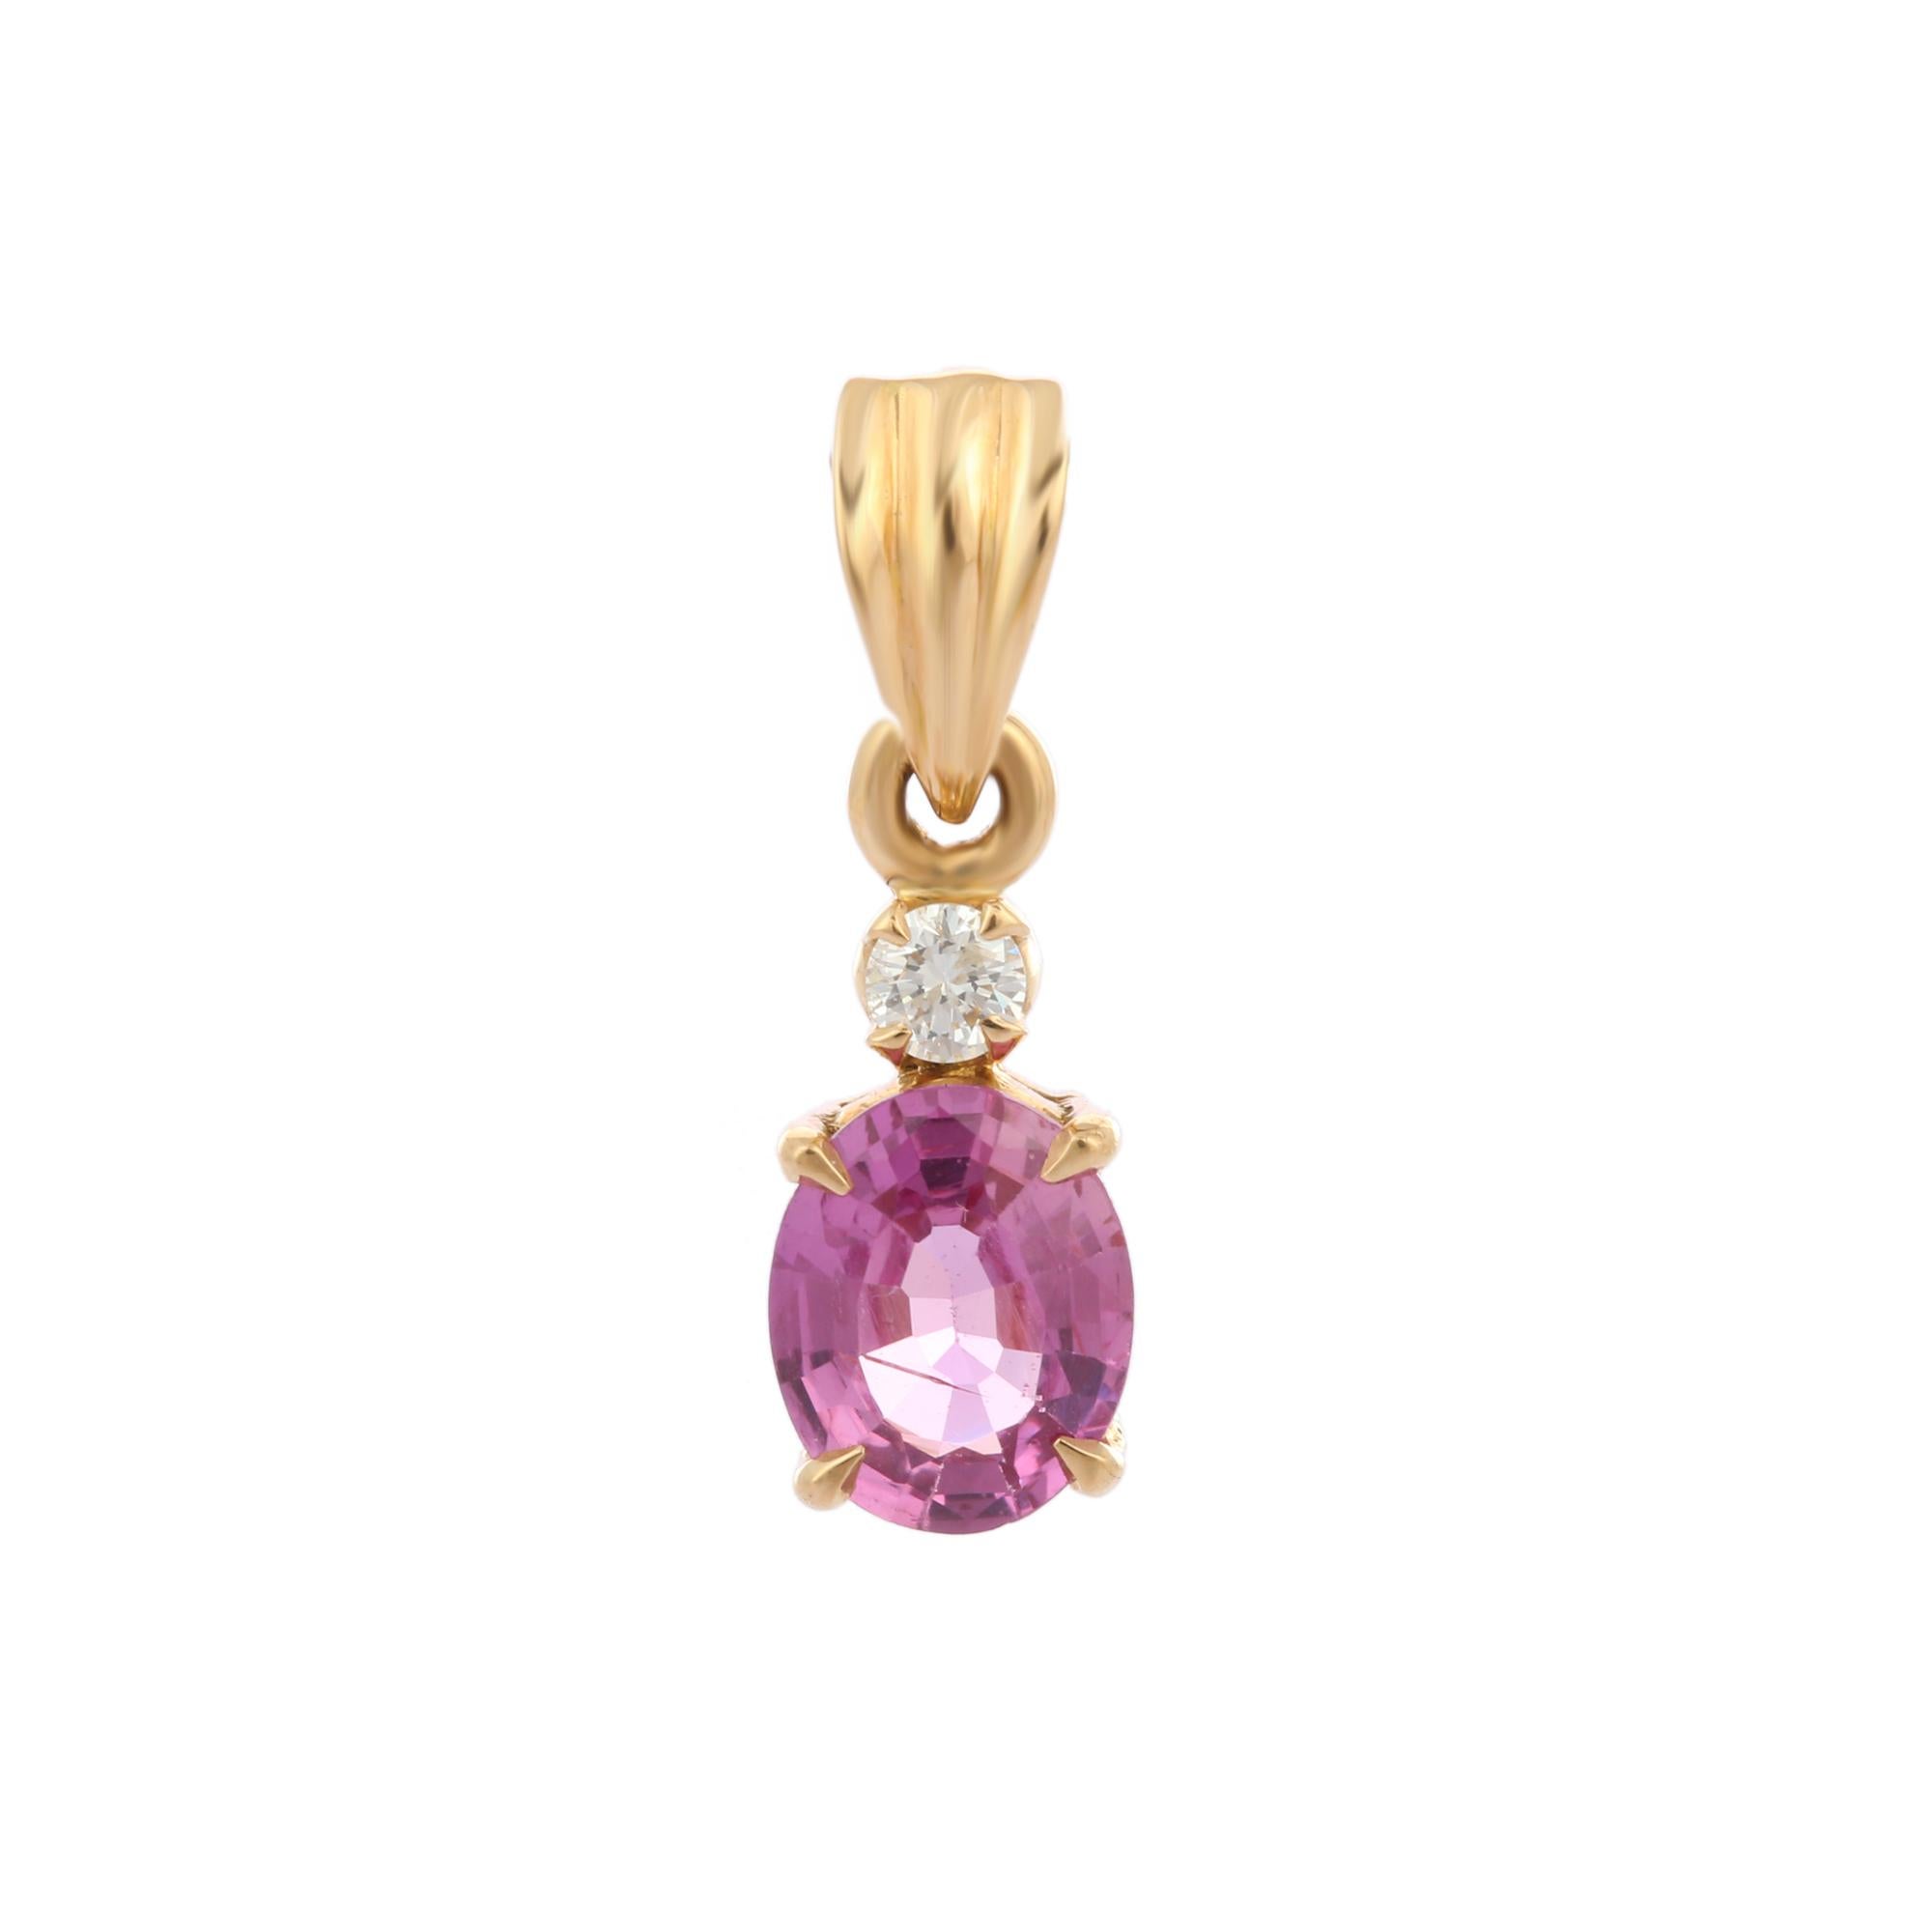 Pendentif minimaliste en or 18 carats avec saphir rose et diamant. Elle est ornée d'un saphir de taille ovale et d'un diamant qui complètent votre look avec une touche décente. Les pendentifs sont portés ou offerts pour représenter l'amour et les